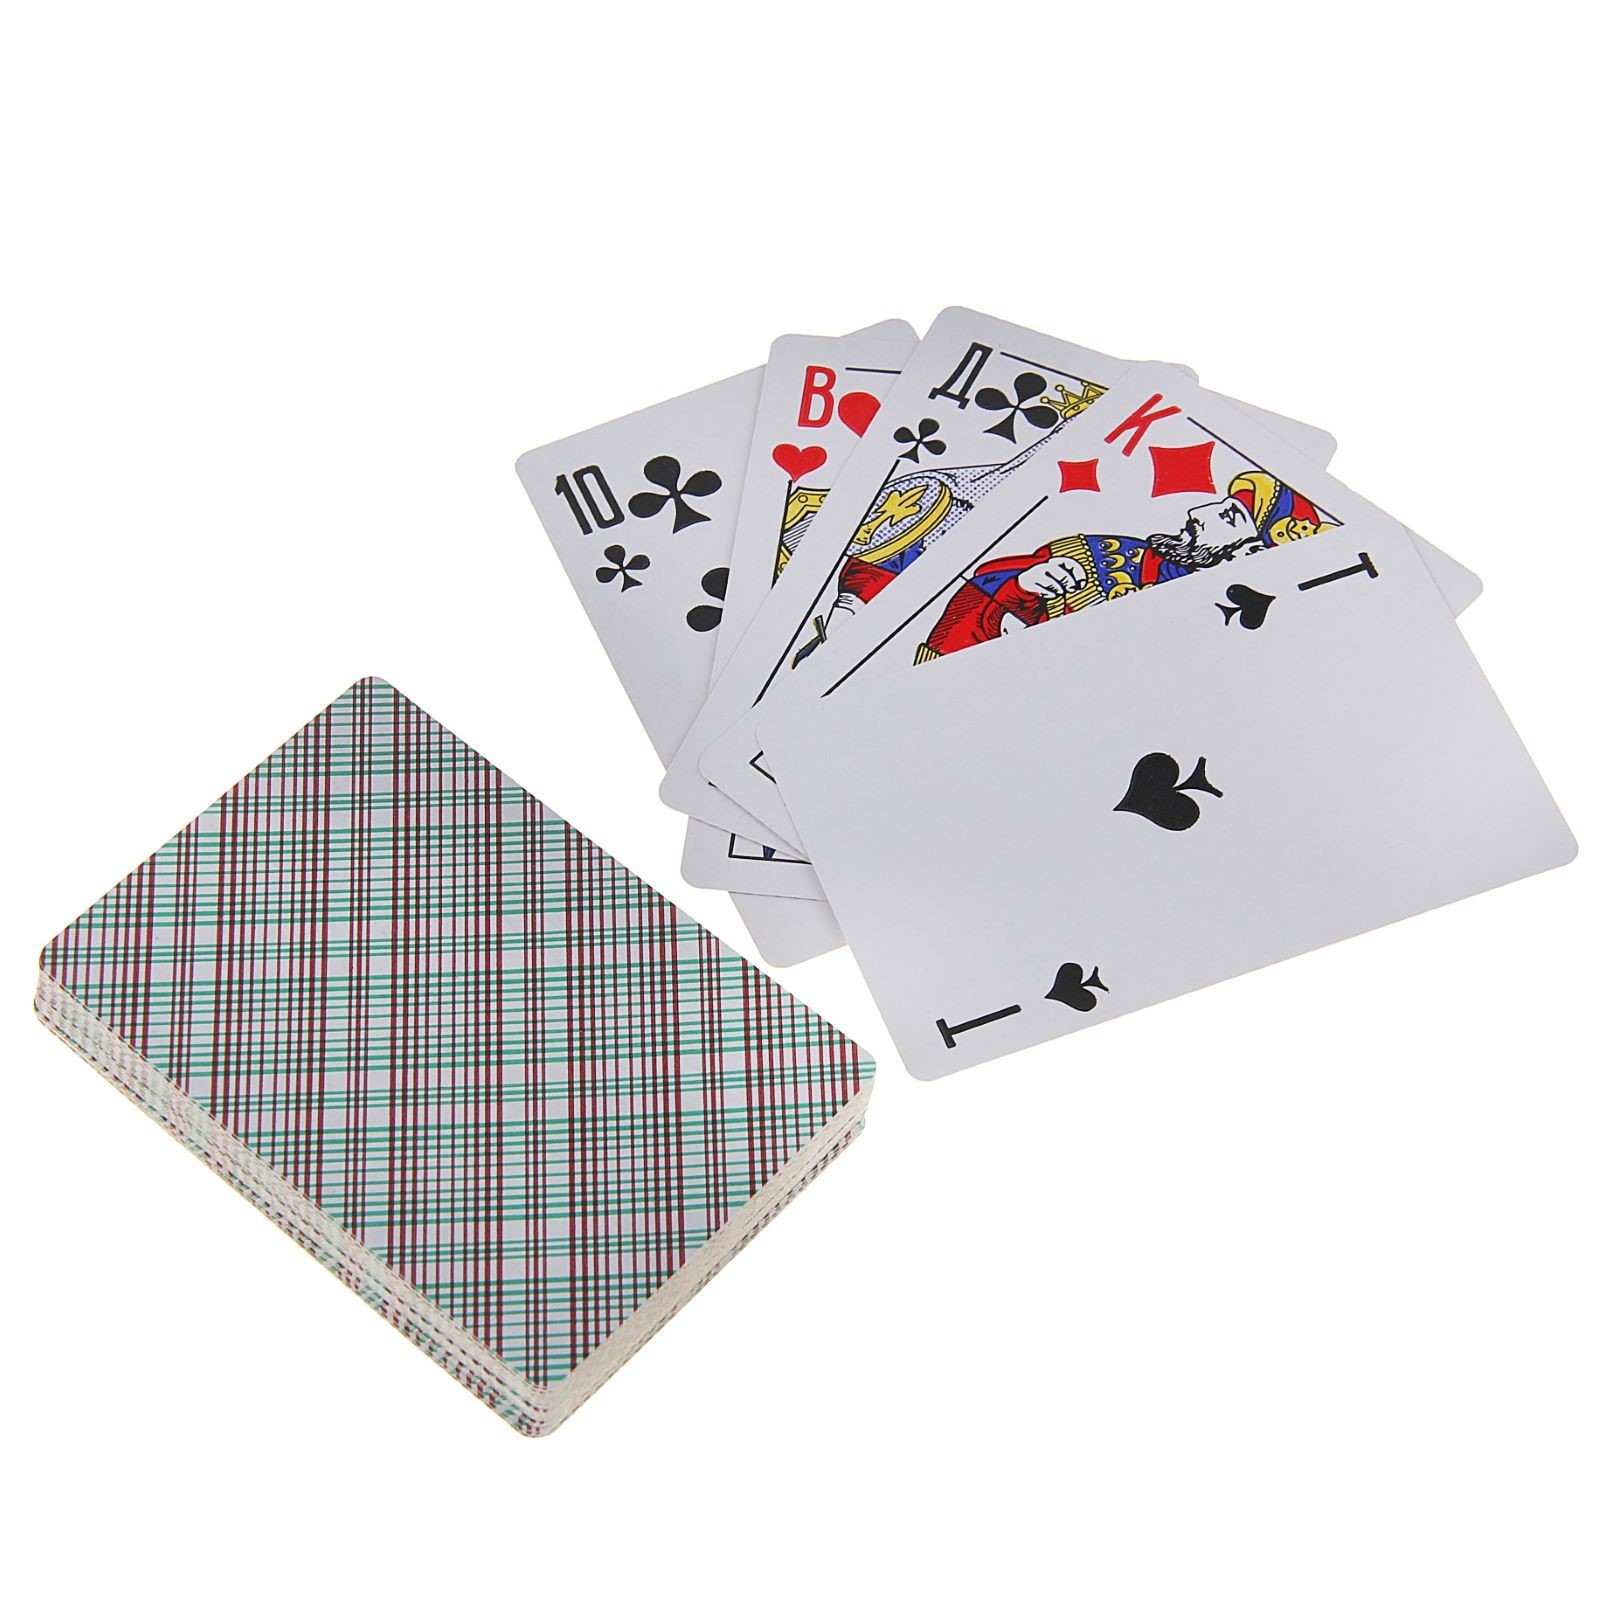 Найти игральные карты. Карты игральные бумажные 36шт. Карты игральные 36 шт.. Карты игральные дама 36 шт.бумажные. Классические игральные карты.